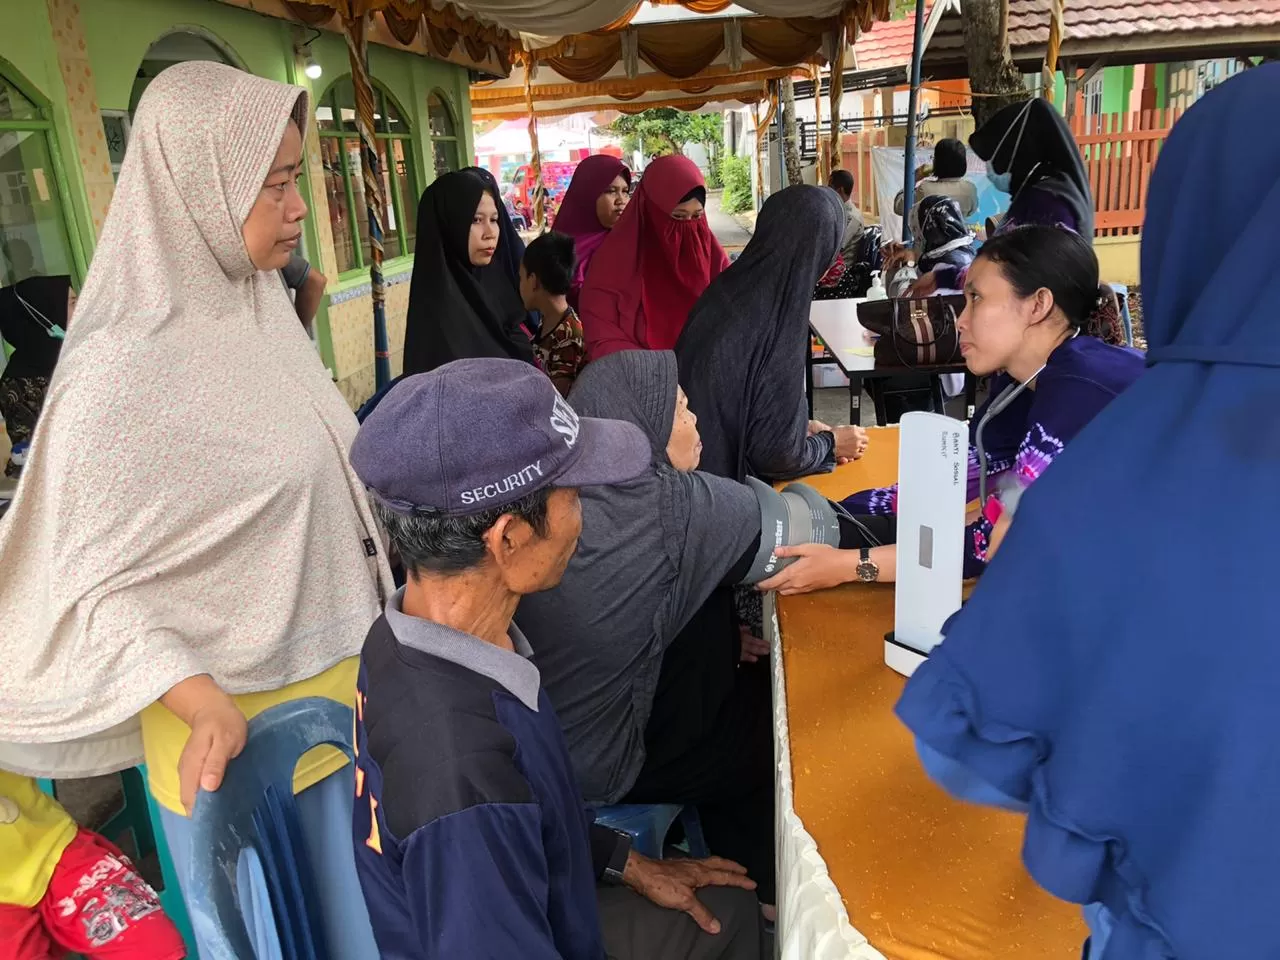 Polda Kalsel melalui Bidang Dokkes menggelar pengobatan gratis di Jalan AMD Permai Alalak Utara Banjarmasin Utara. Lokasinya di Masjid Al Amin, Jumat (10/1).